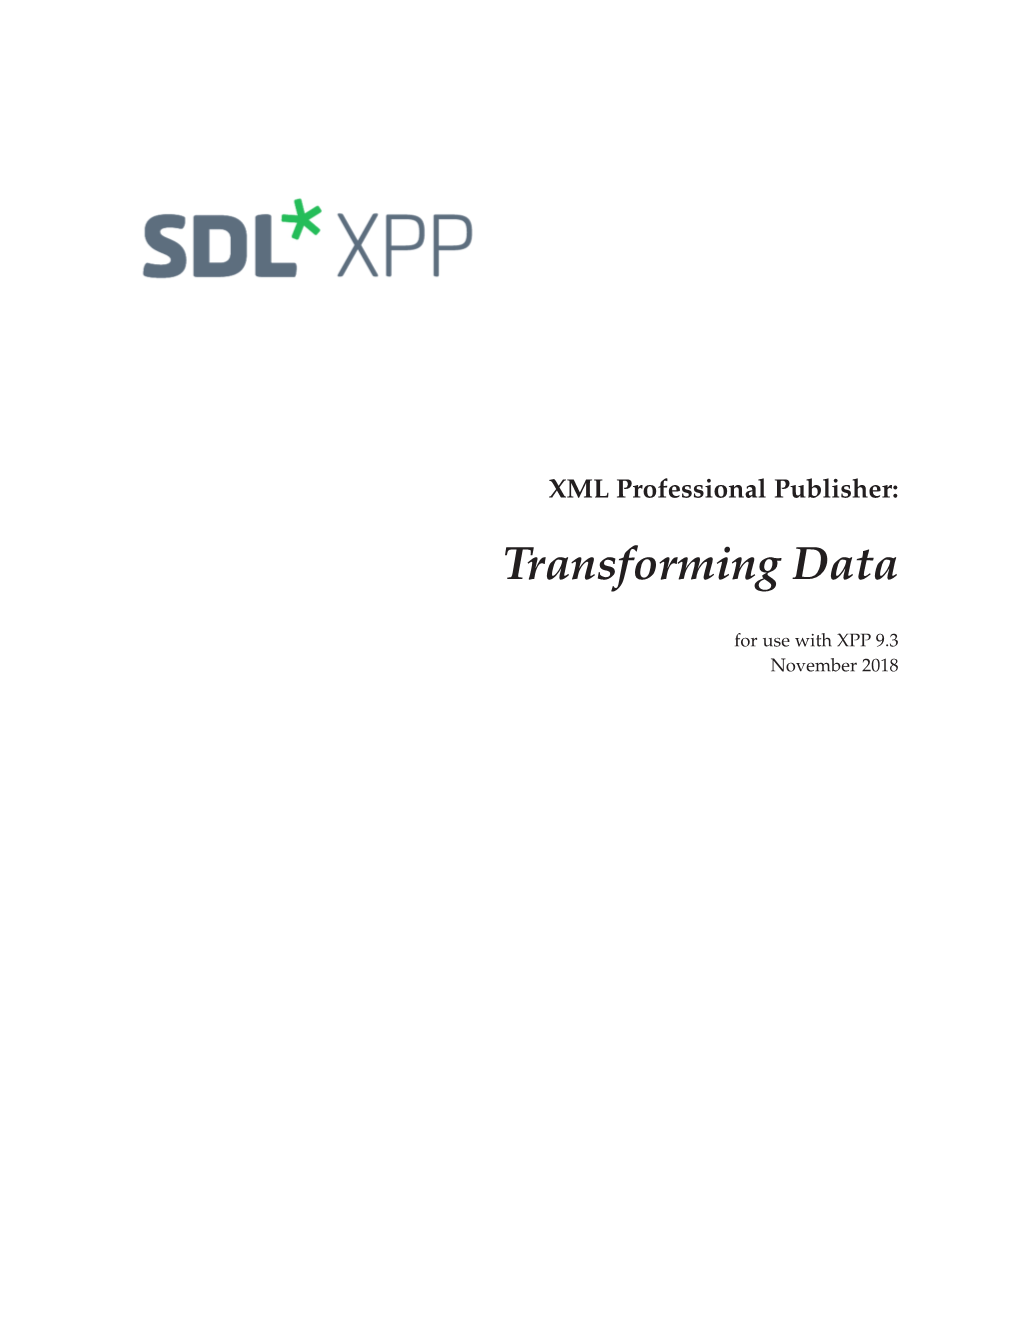 Transforming Data